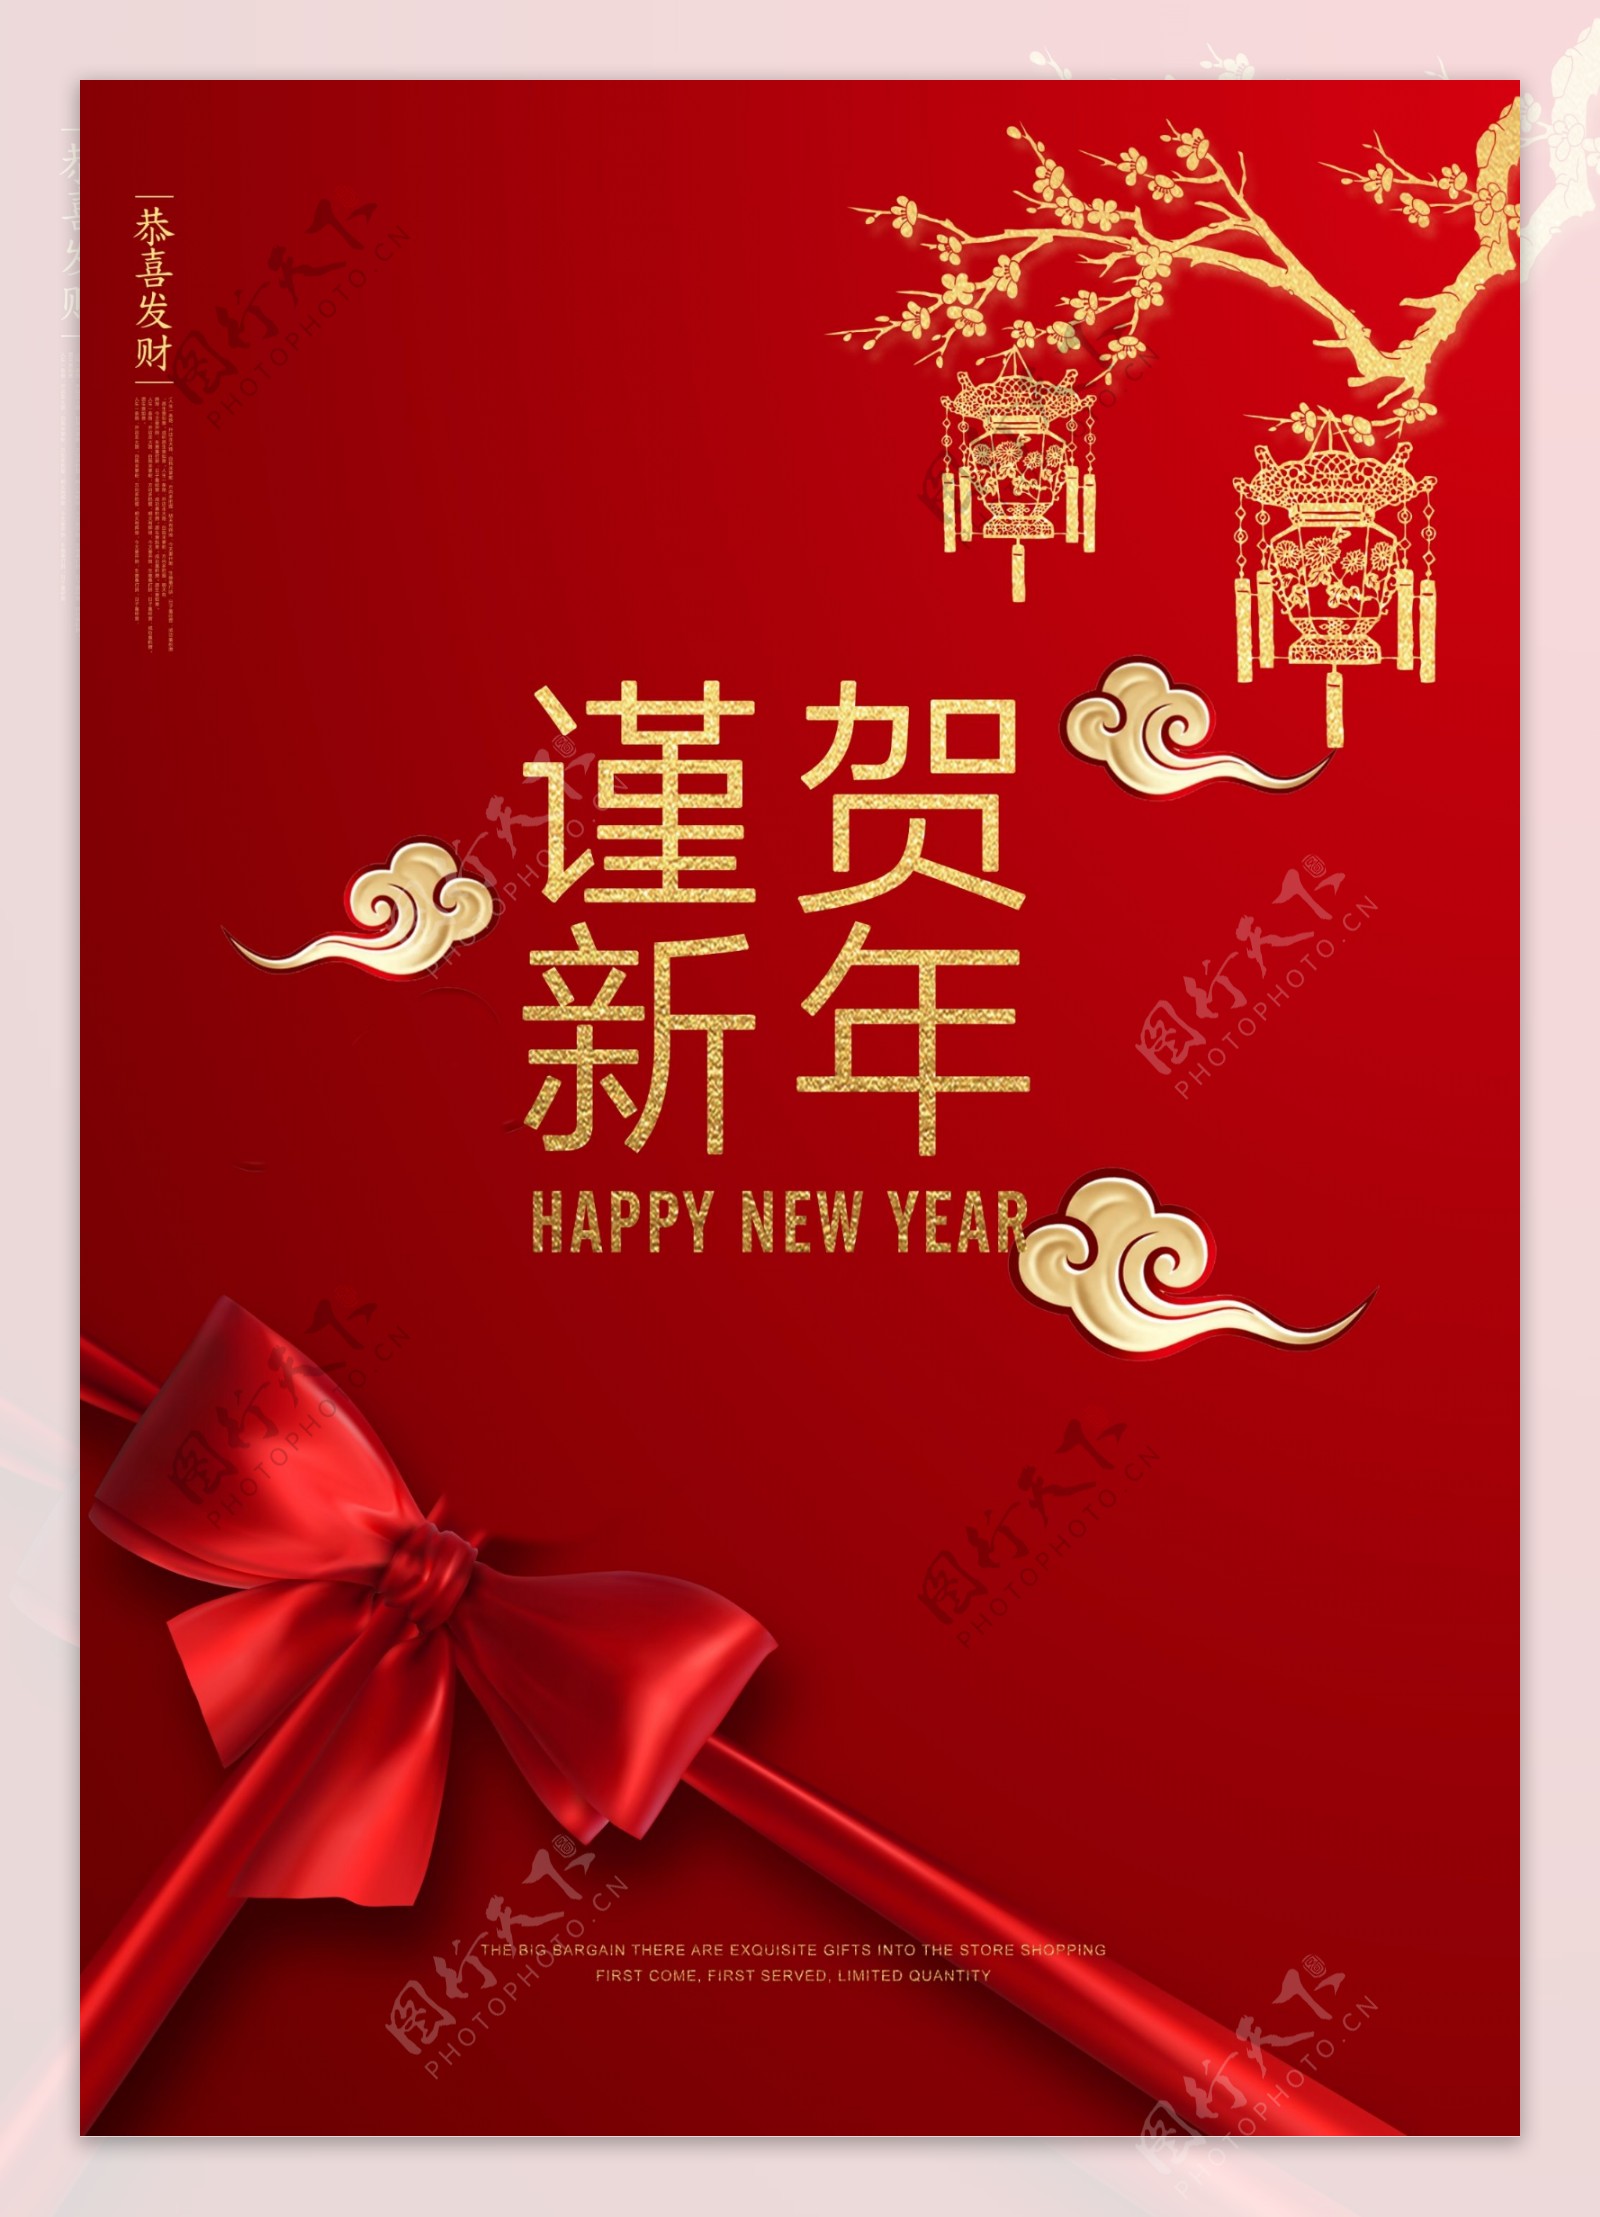 红色中国传统新年快乐的简略海报